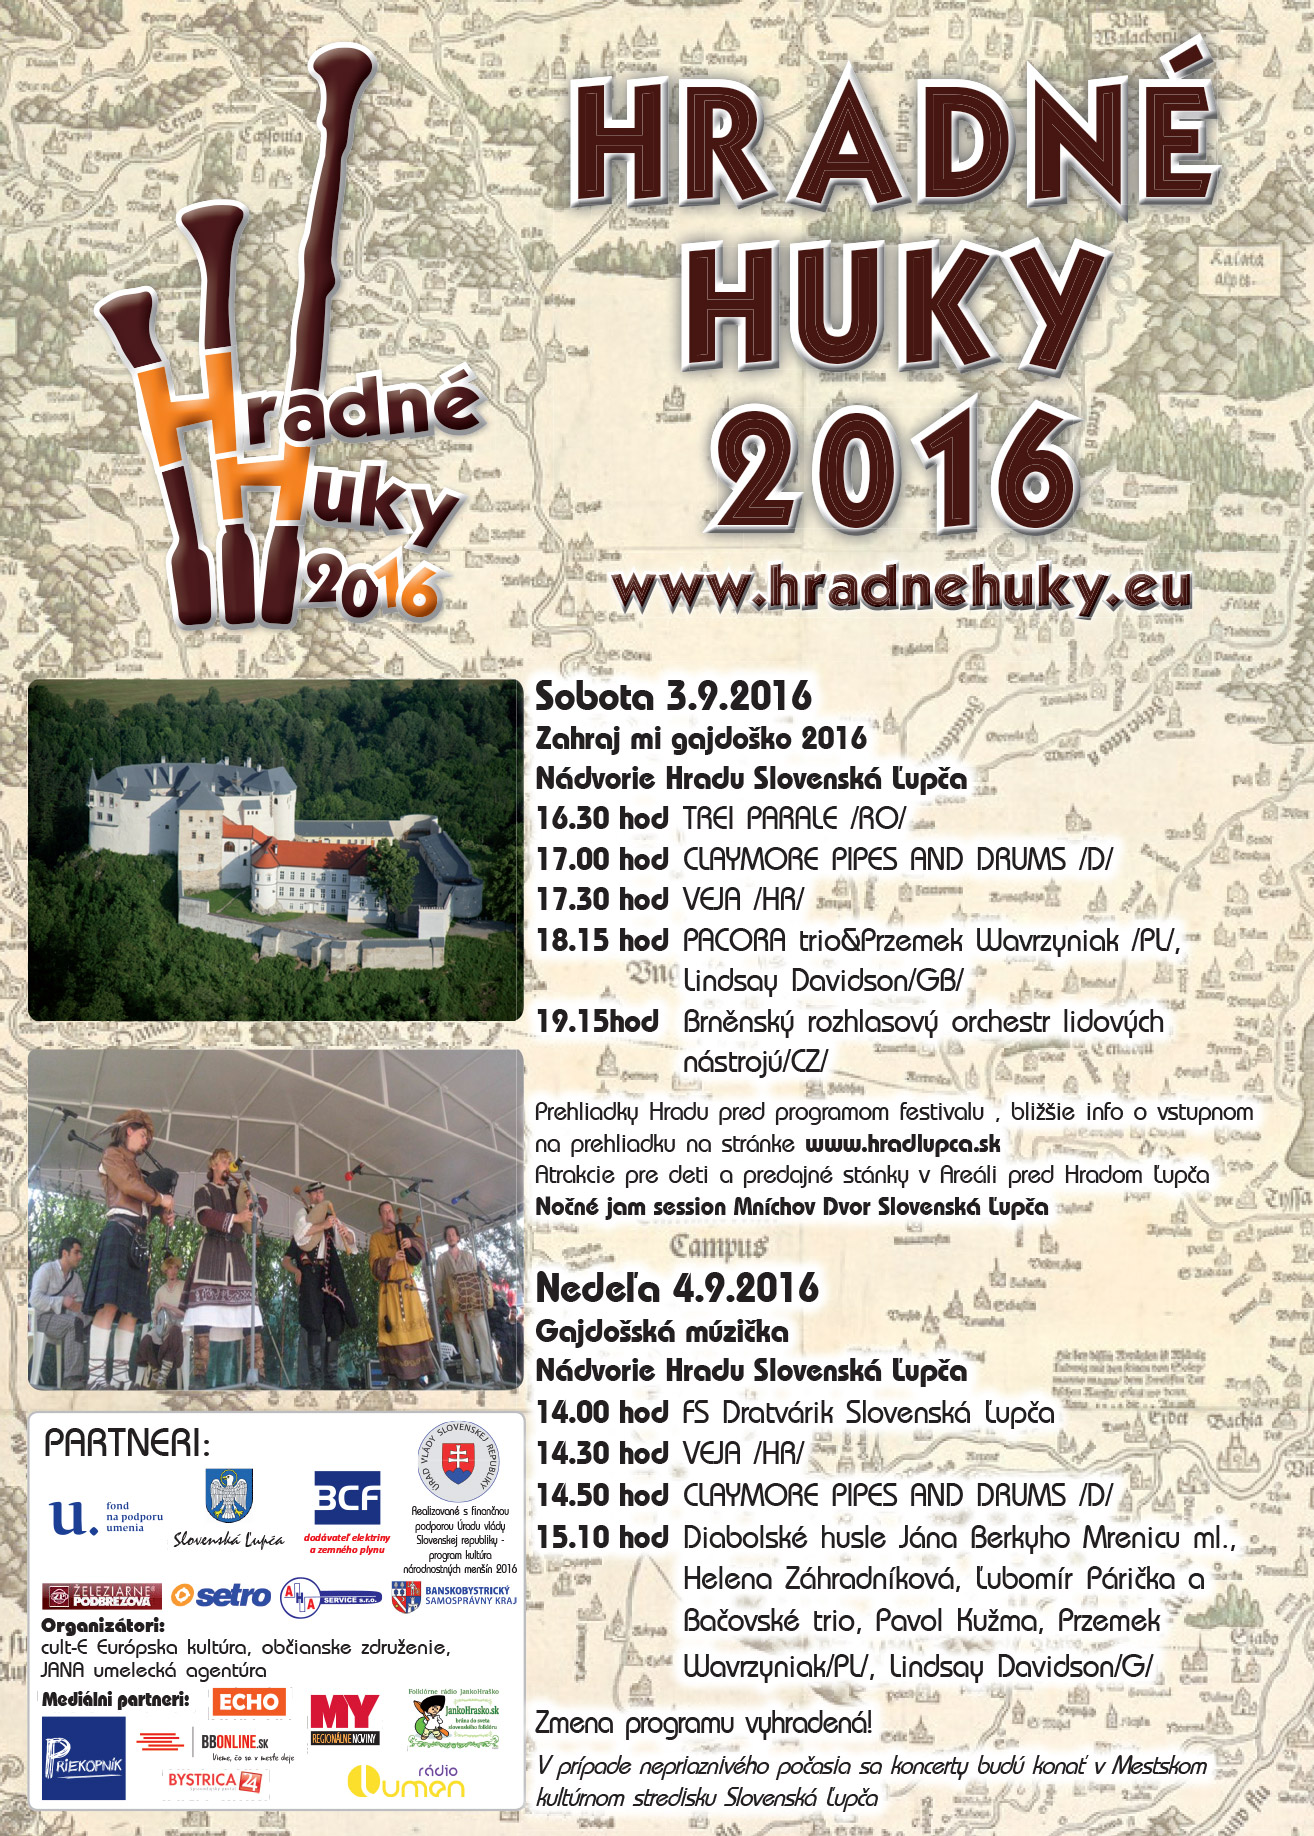 Hradn Huky Slovensk upa 2016 - 6. ronk